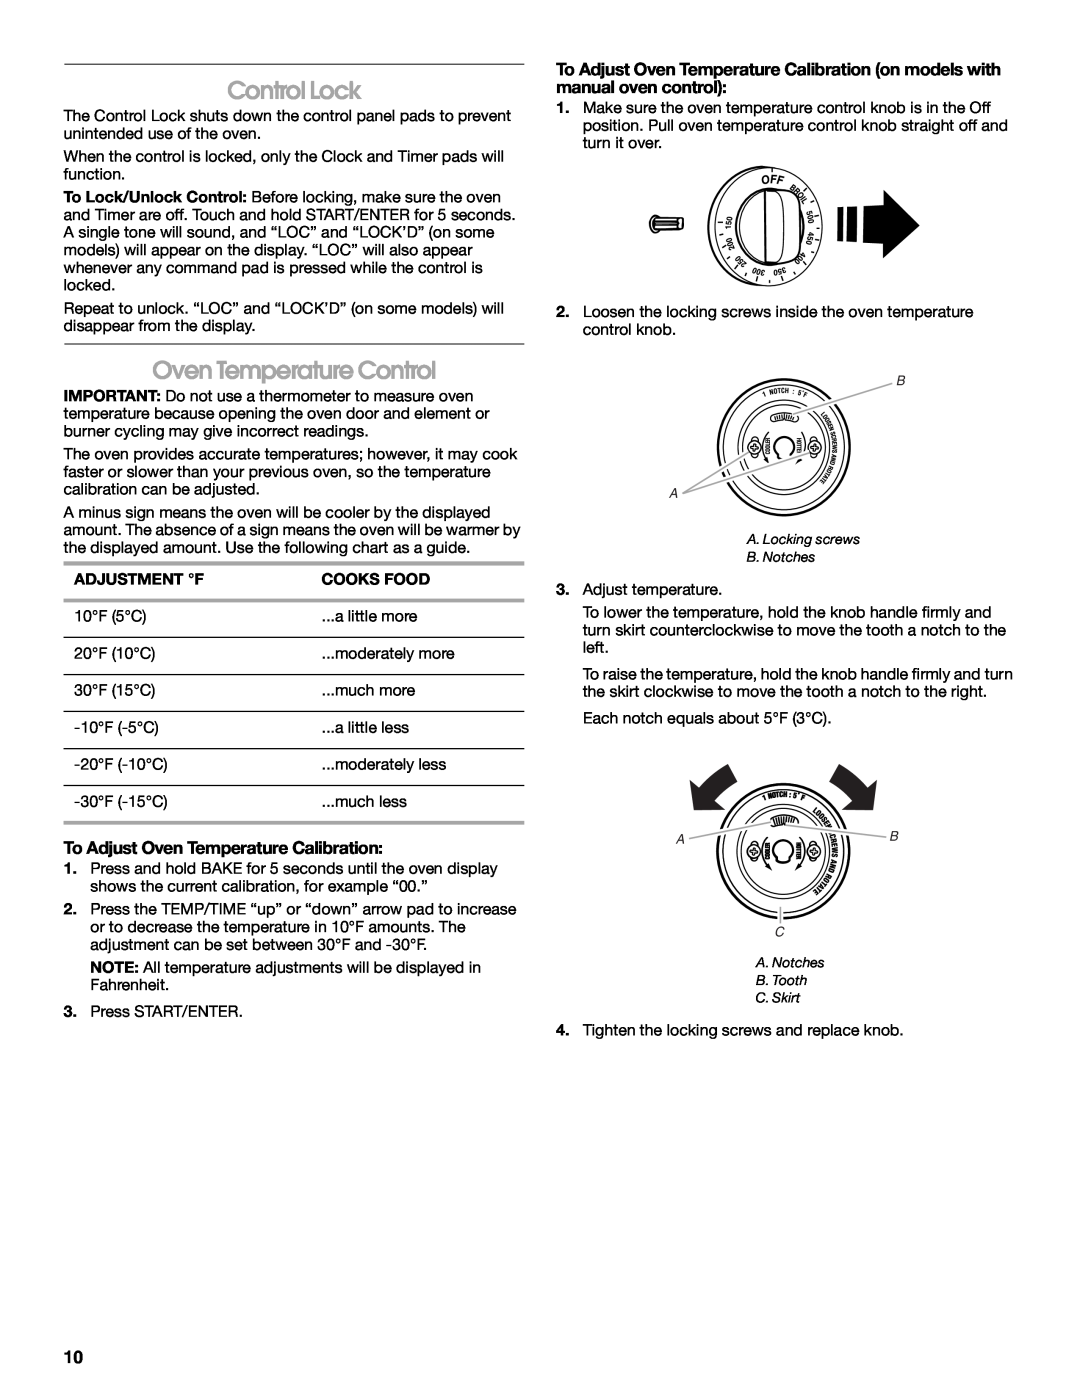 Whirlpool TES326RD0 manual Control Lock, Oven Temperature Control, To Adjust Oven Temperature Calibration 